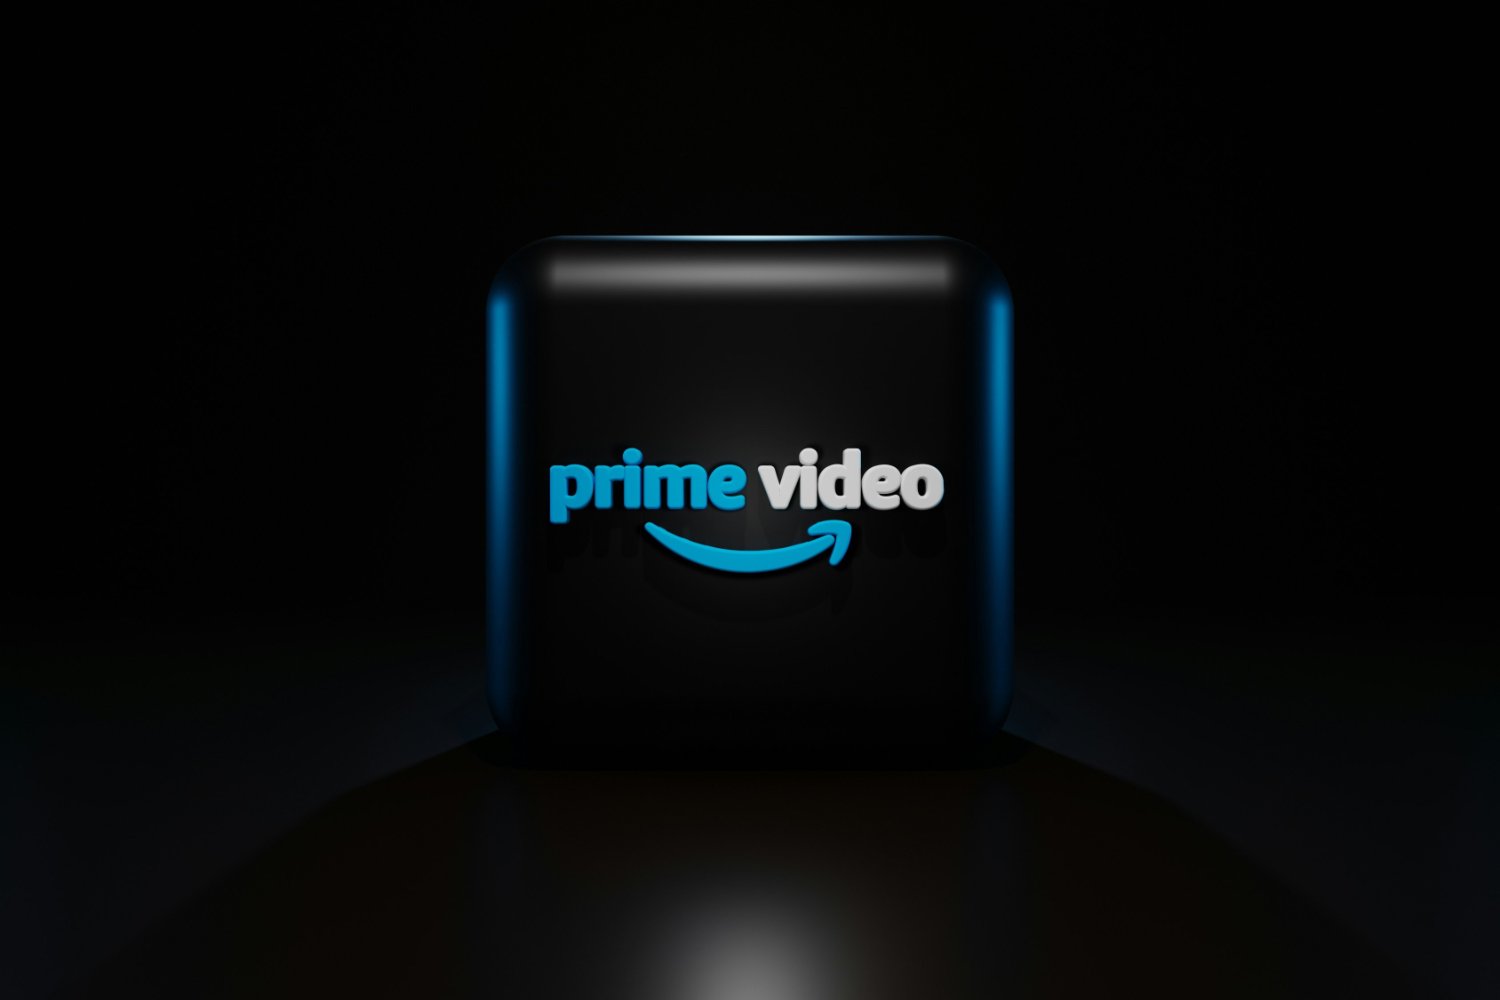 Mauvaises traductions, fautes d’orthographe… Amazon va faire le ménage dans Prime Video